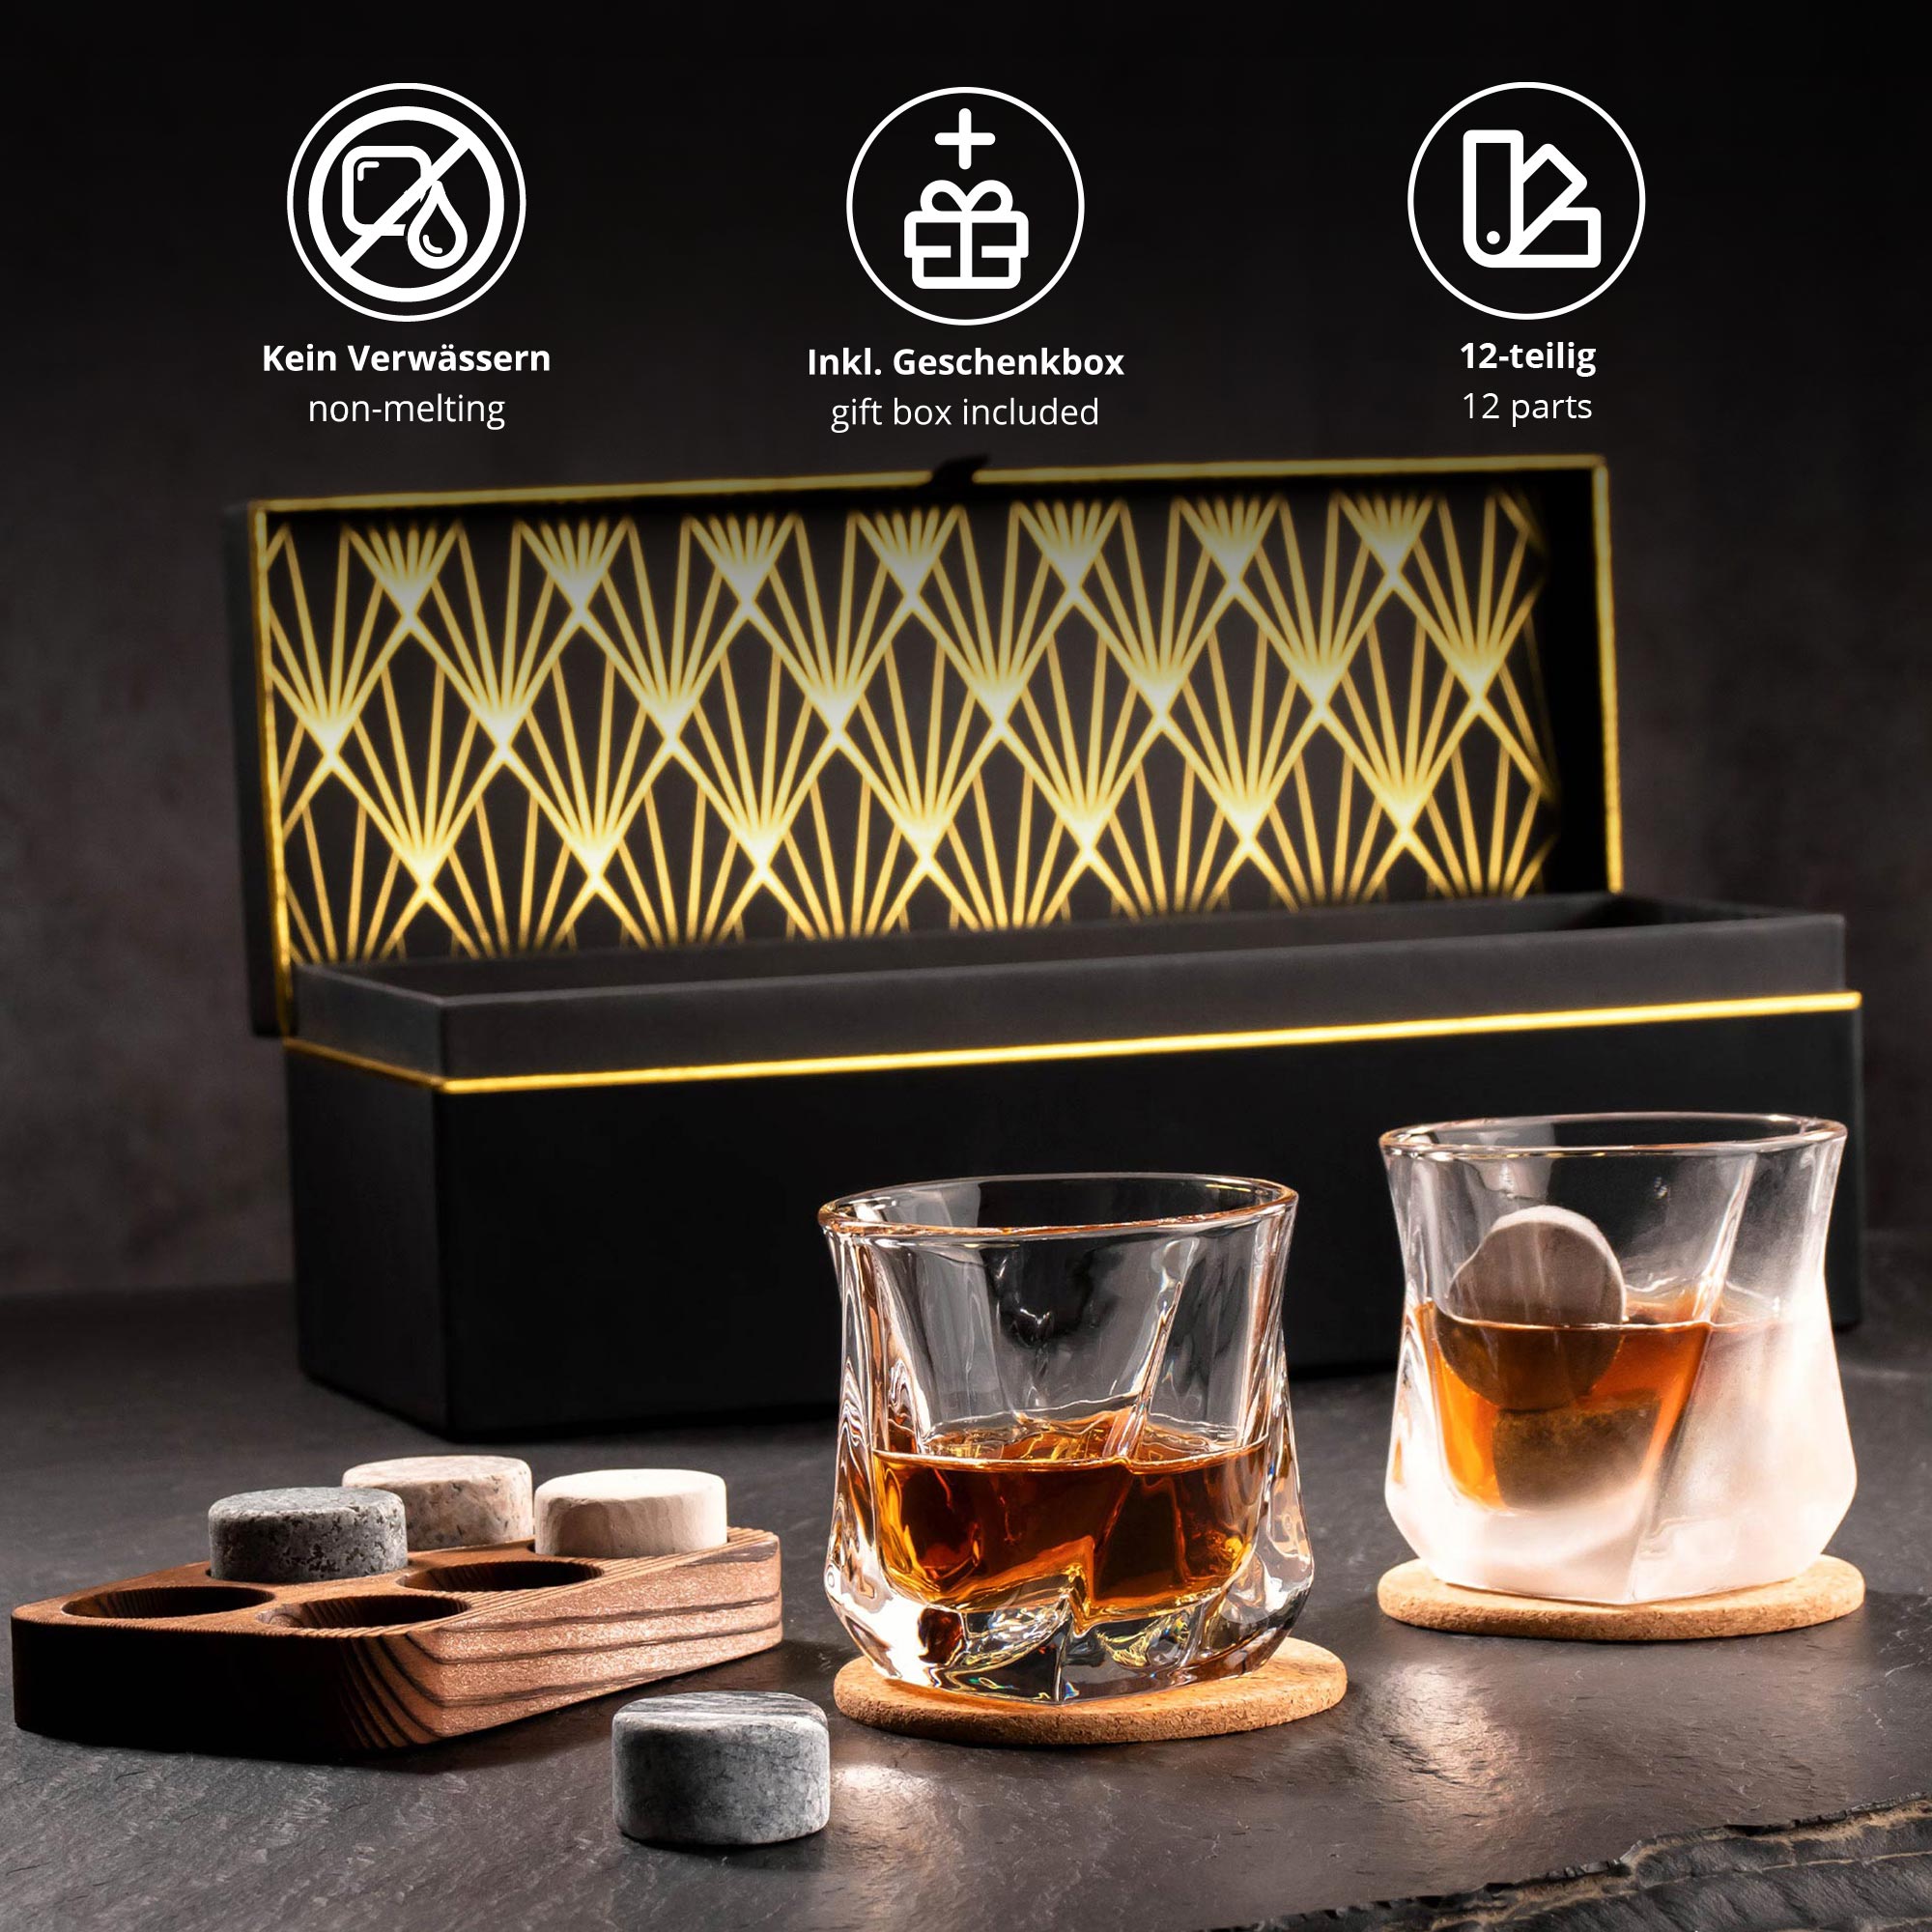 Whisky Geschenkset Deluxe personalisiert zum 70. Geburtstag